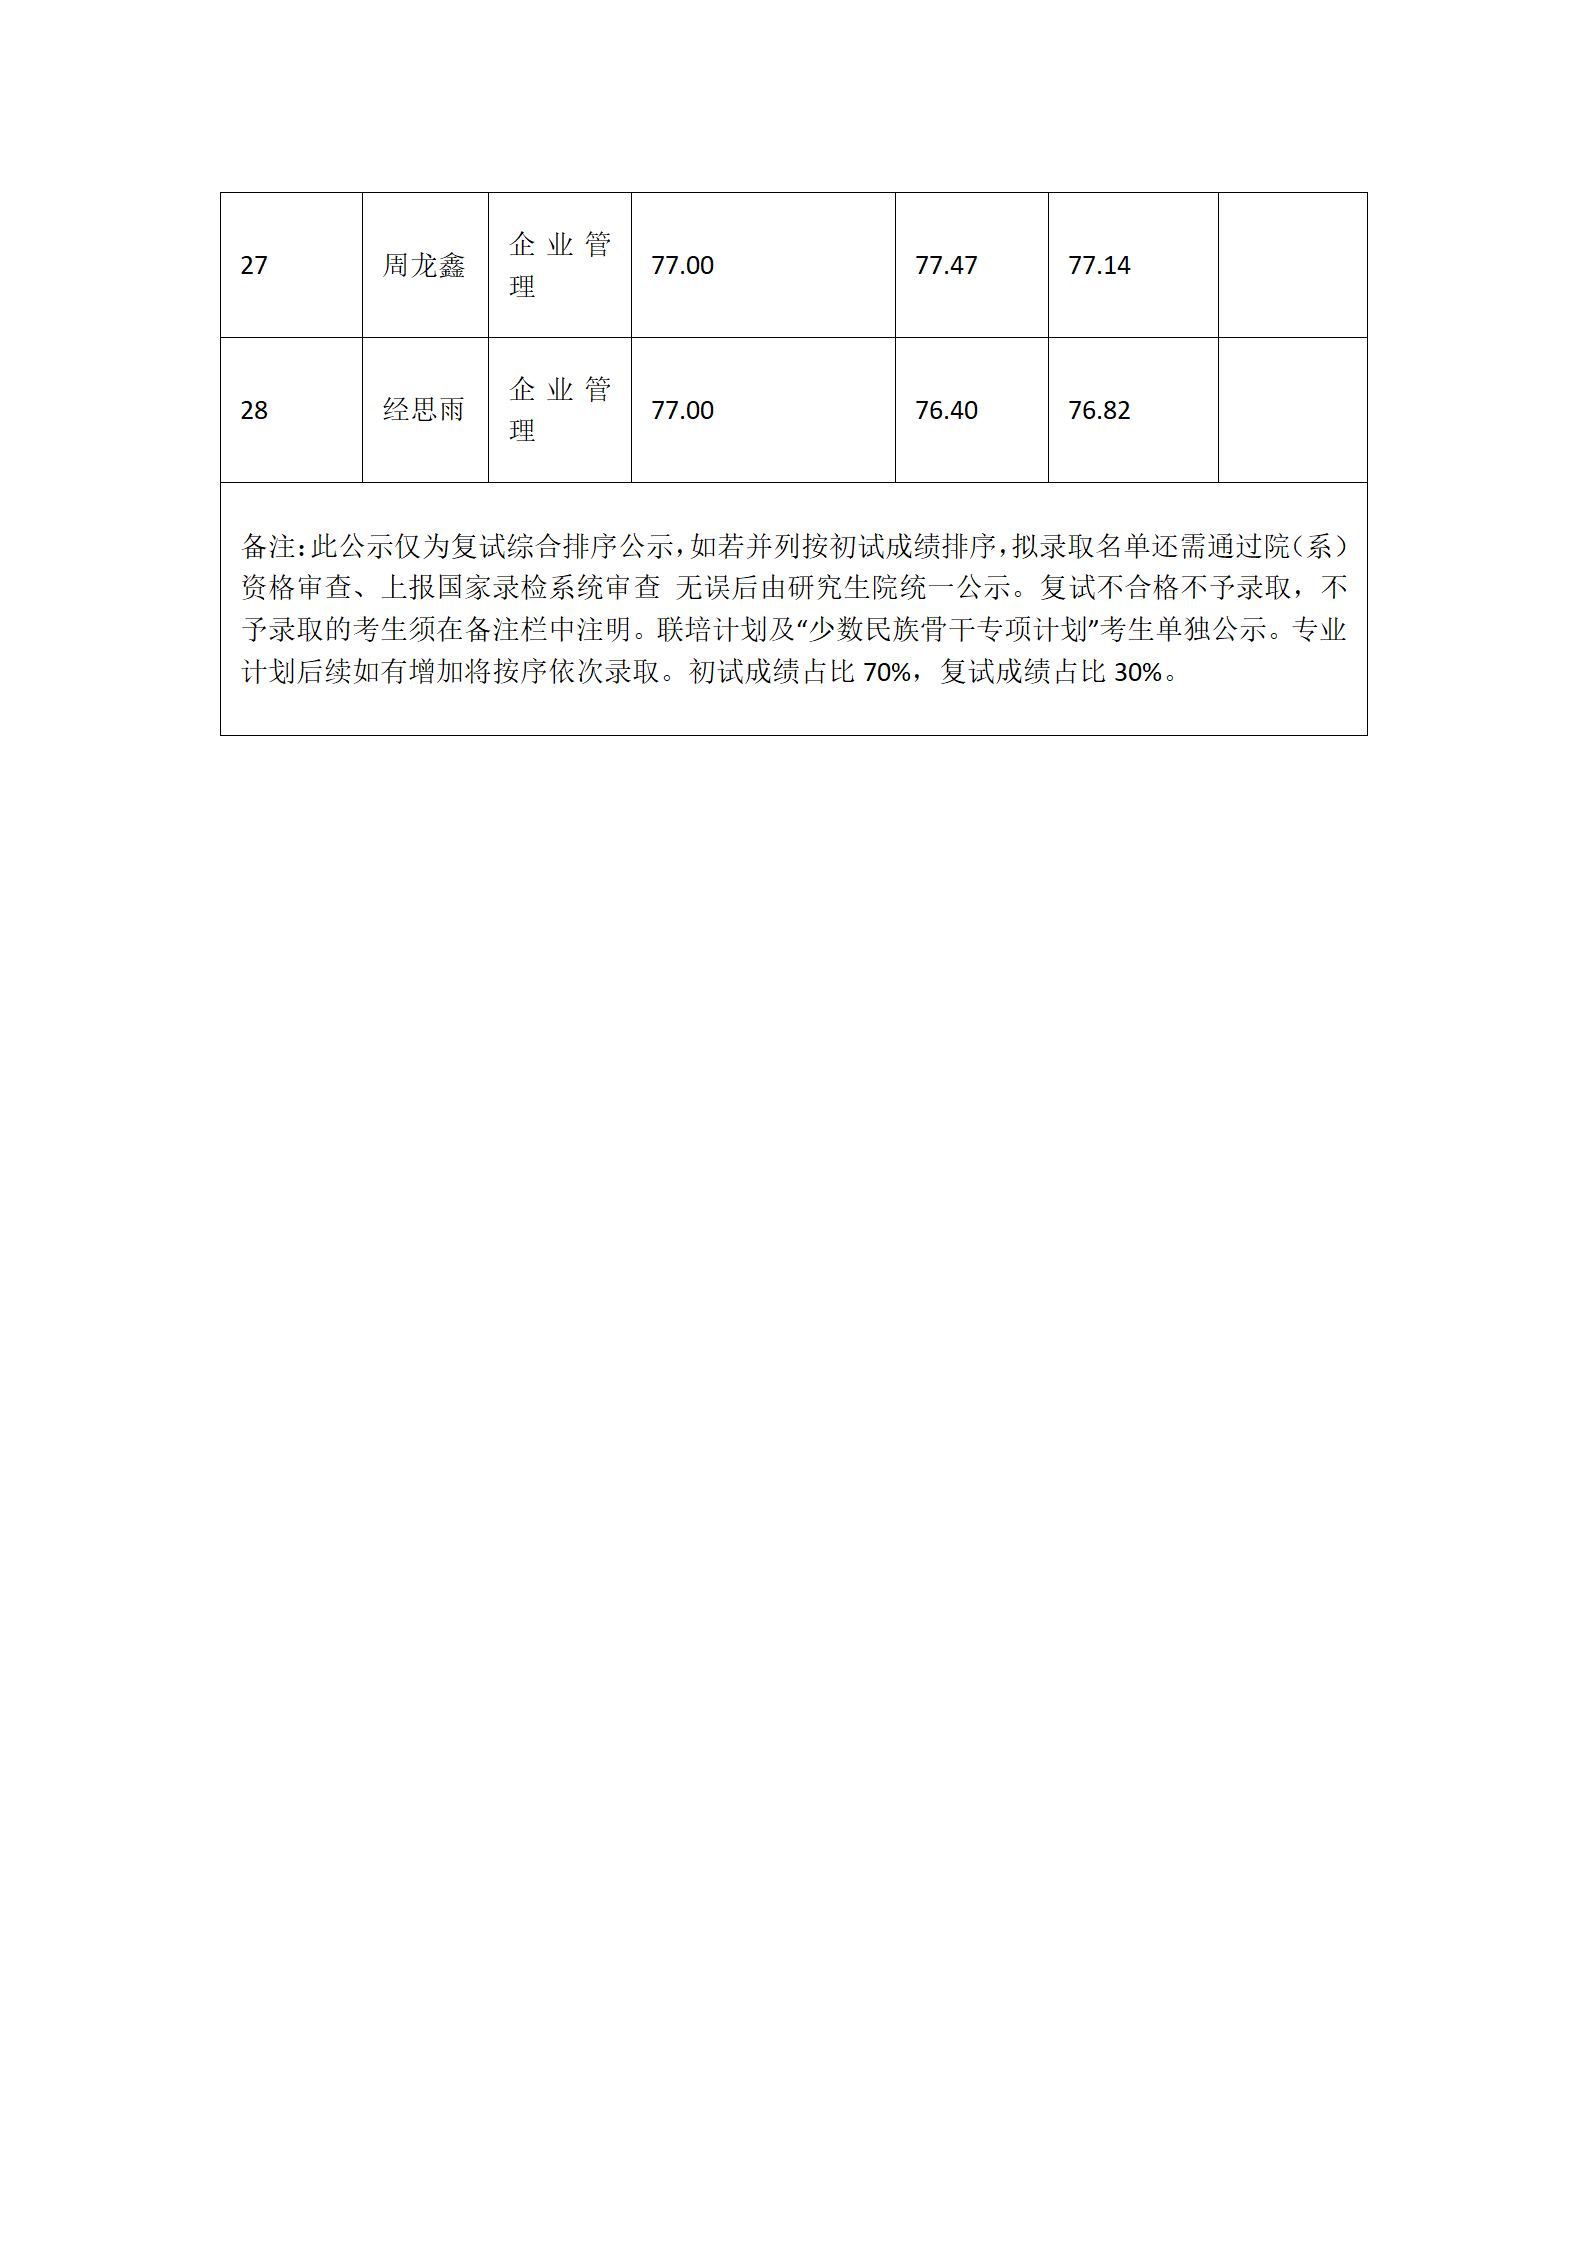 郑州大学商学院2022年学术型硕士研究生复试结果综合排序公示_07.png